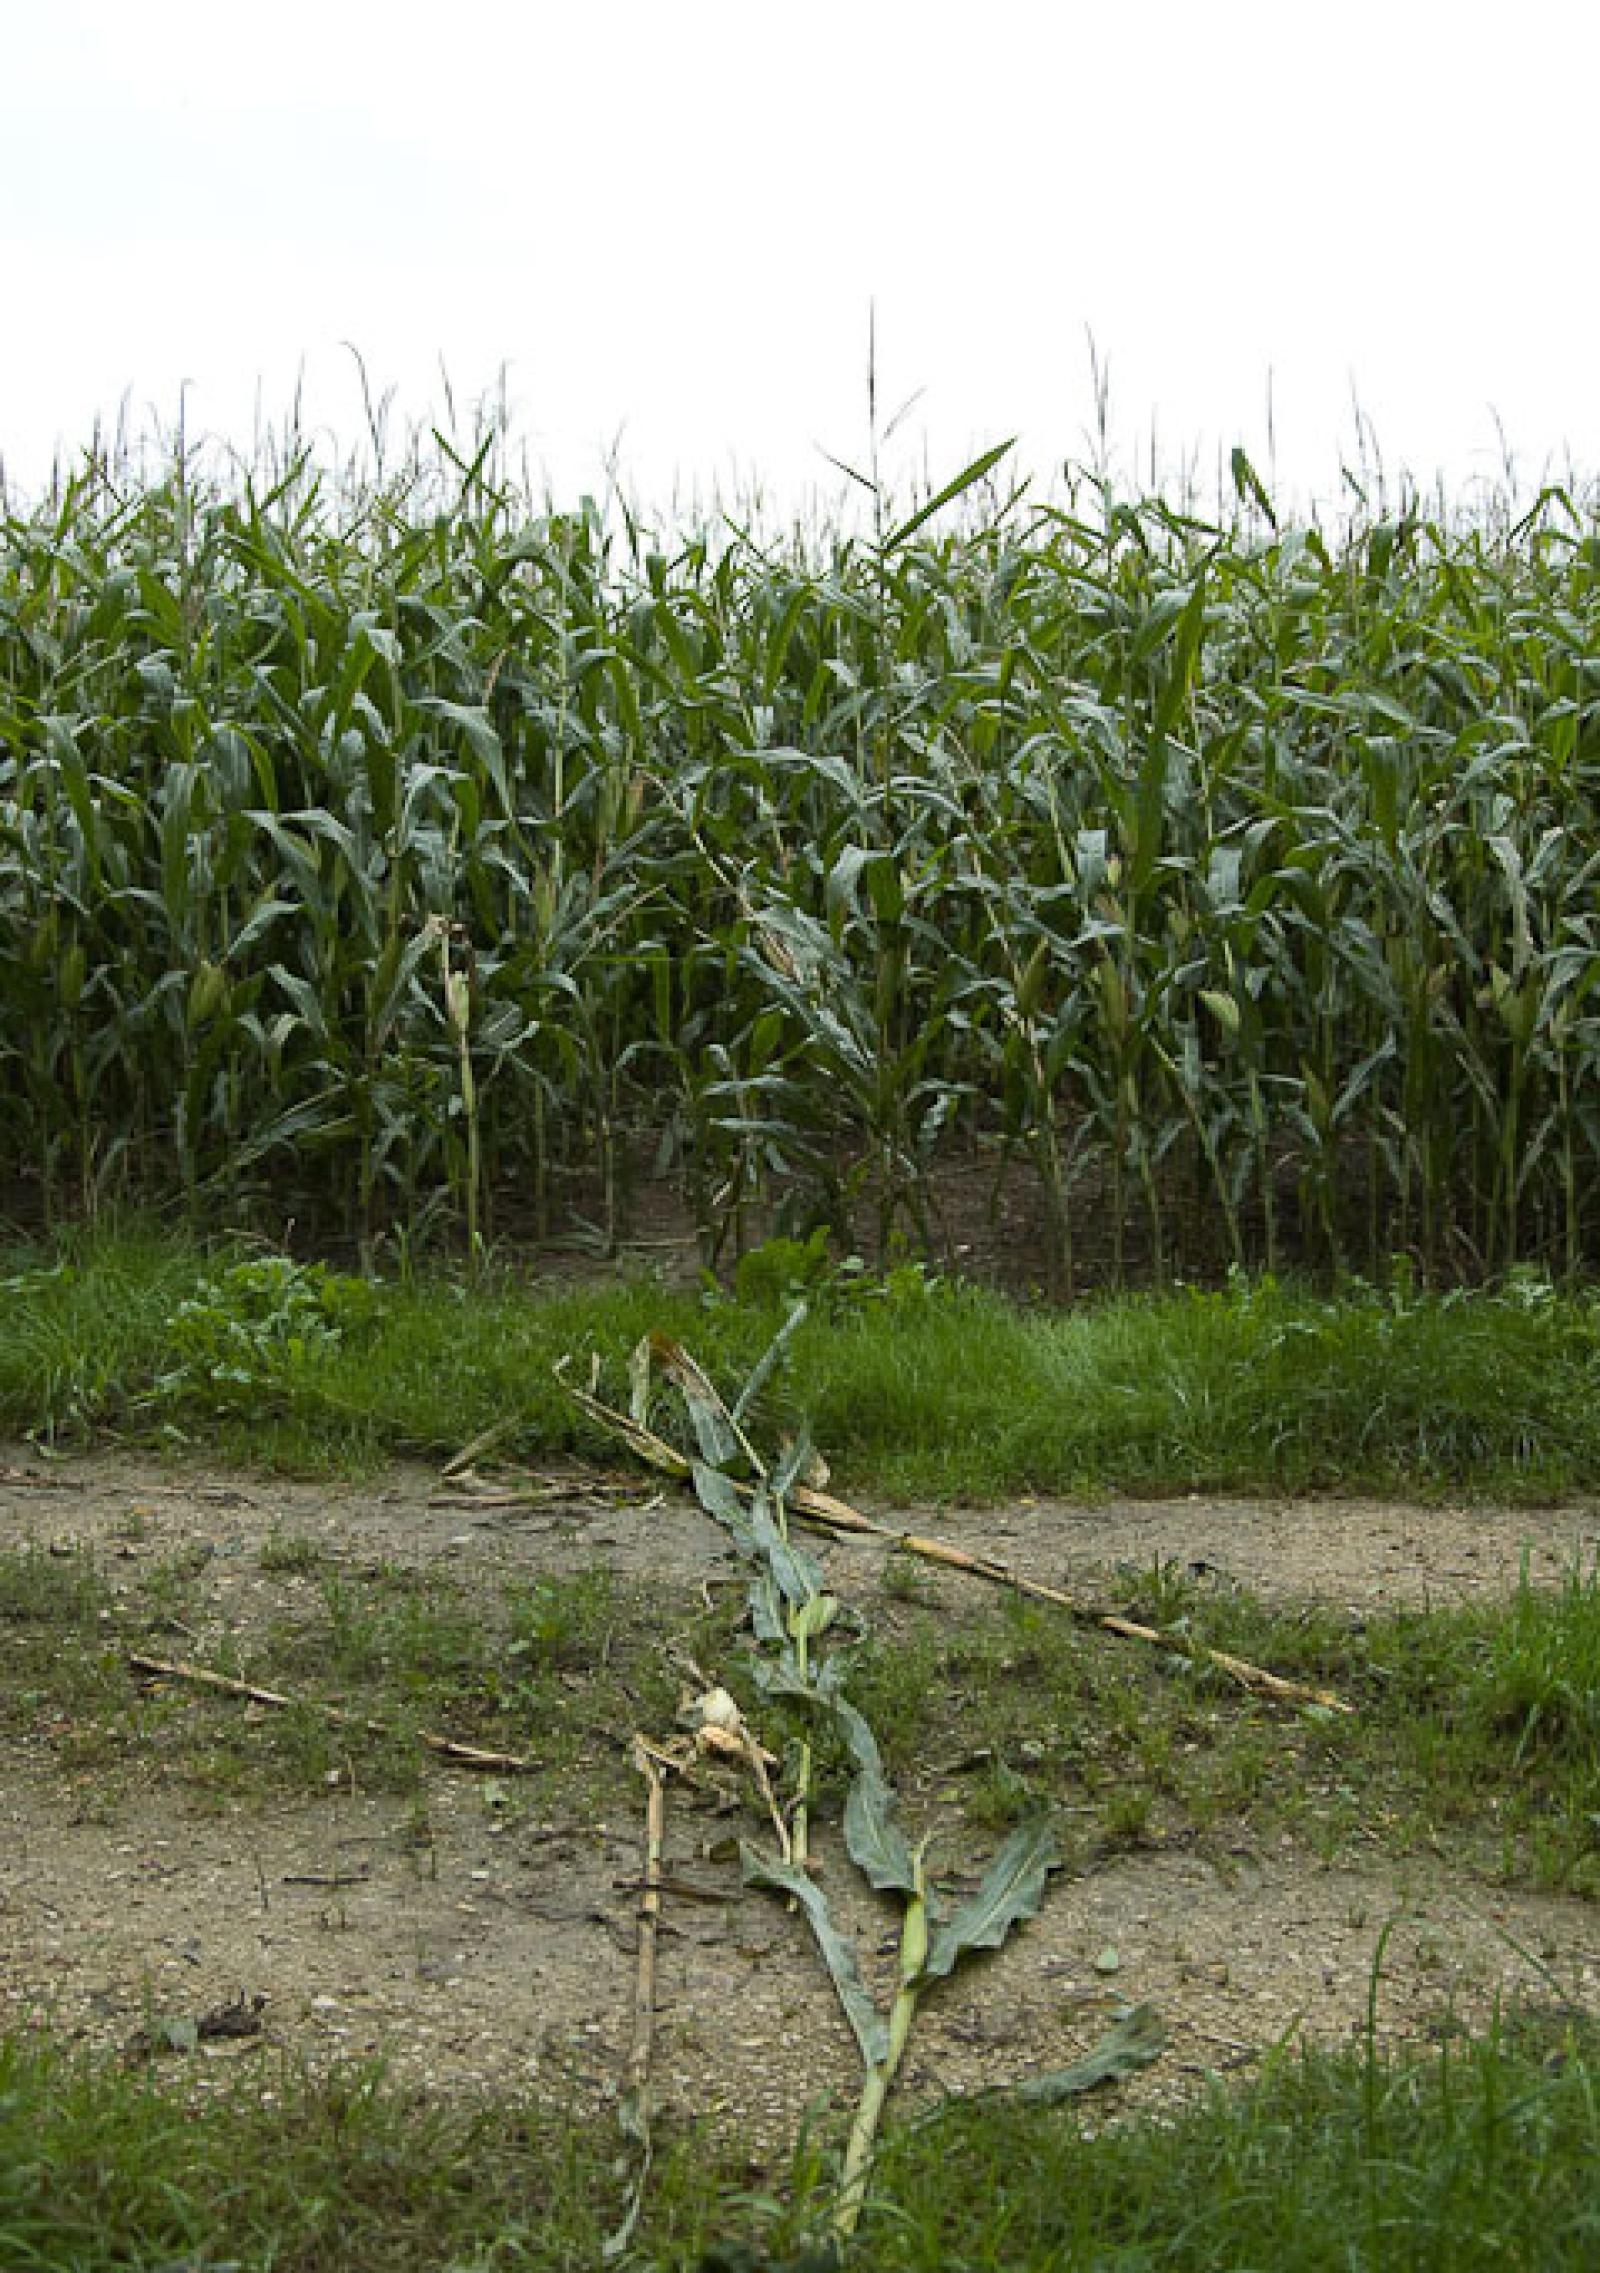 Passage du cours d’eau vers un champ de maïs (© Christof Angst)